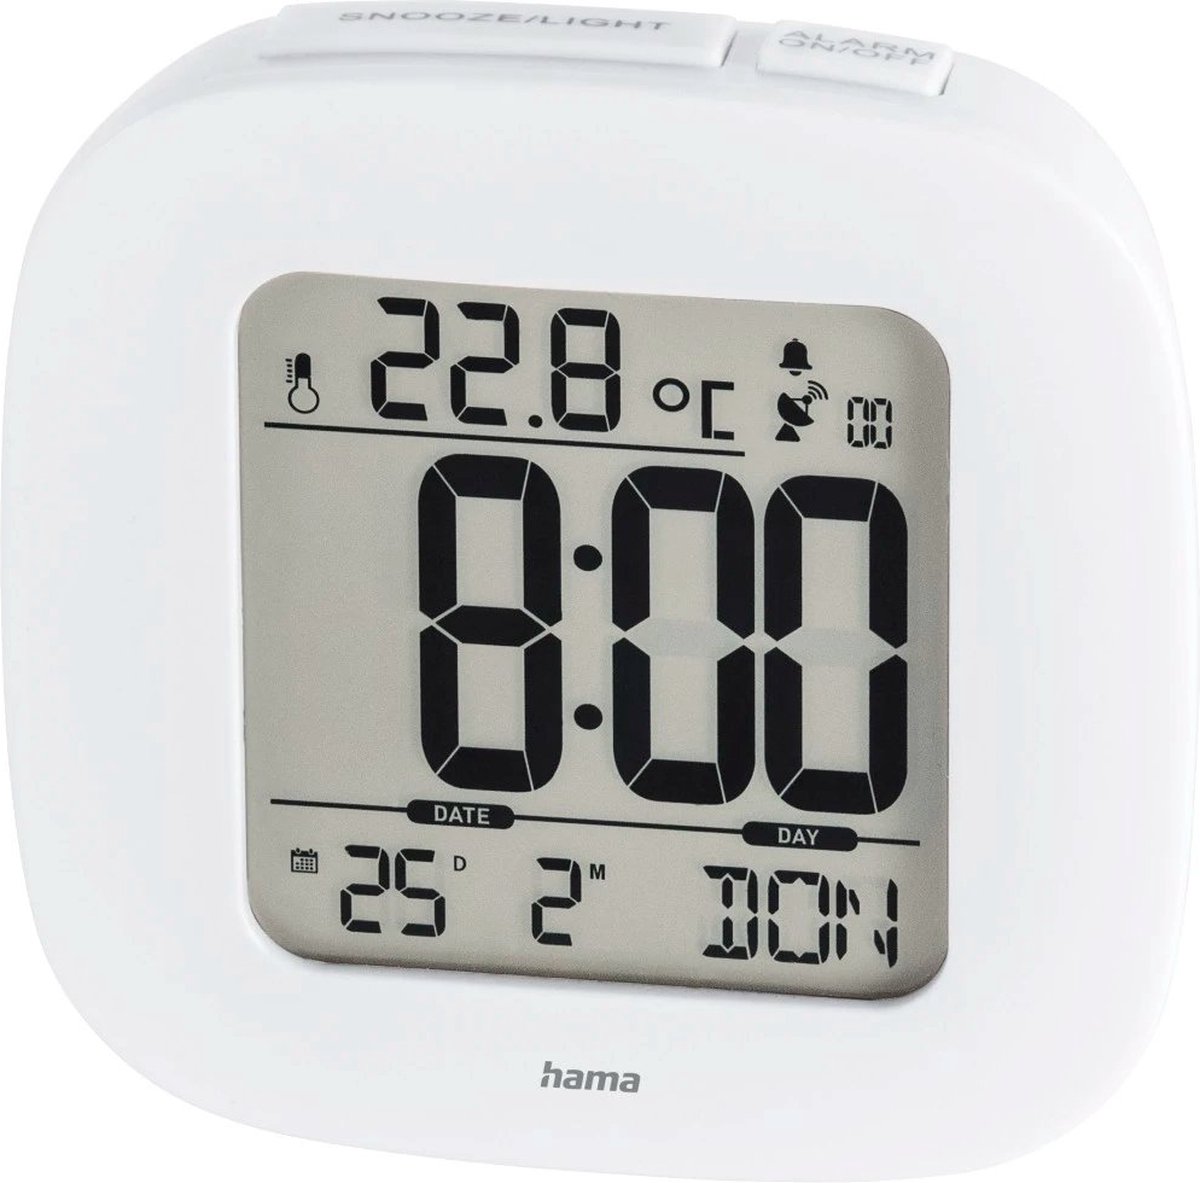 Hama Draadloze wekker - Digitale wekker - Display - Tijd, datum- en temperatuurweergave - Sluimerfunctie - 7,8x4x7,8 cm - Incl. batterijen - Wit